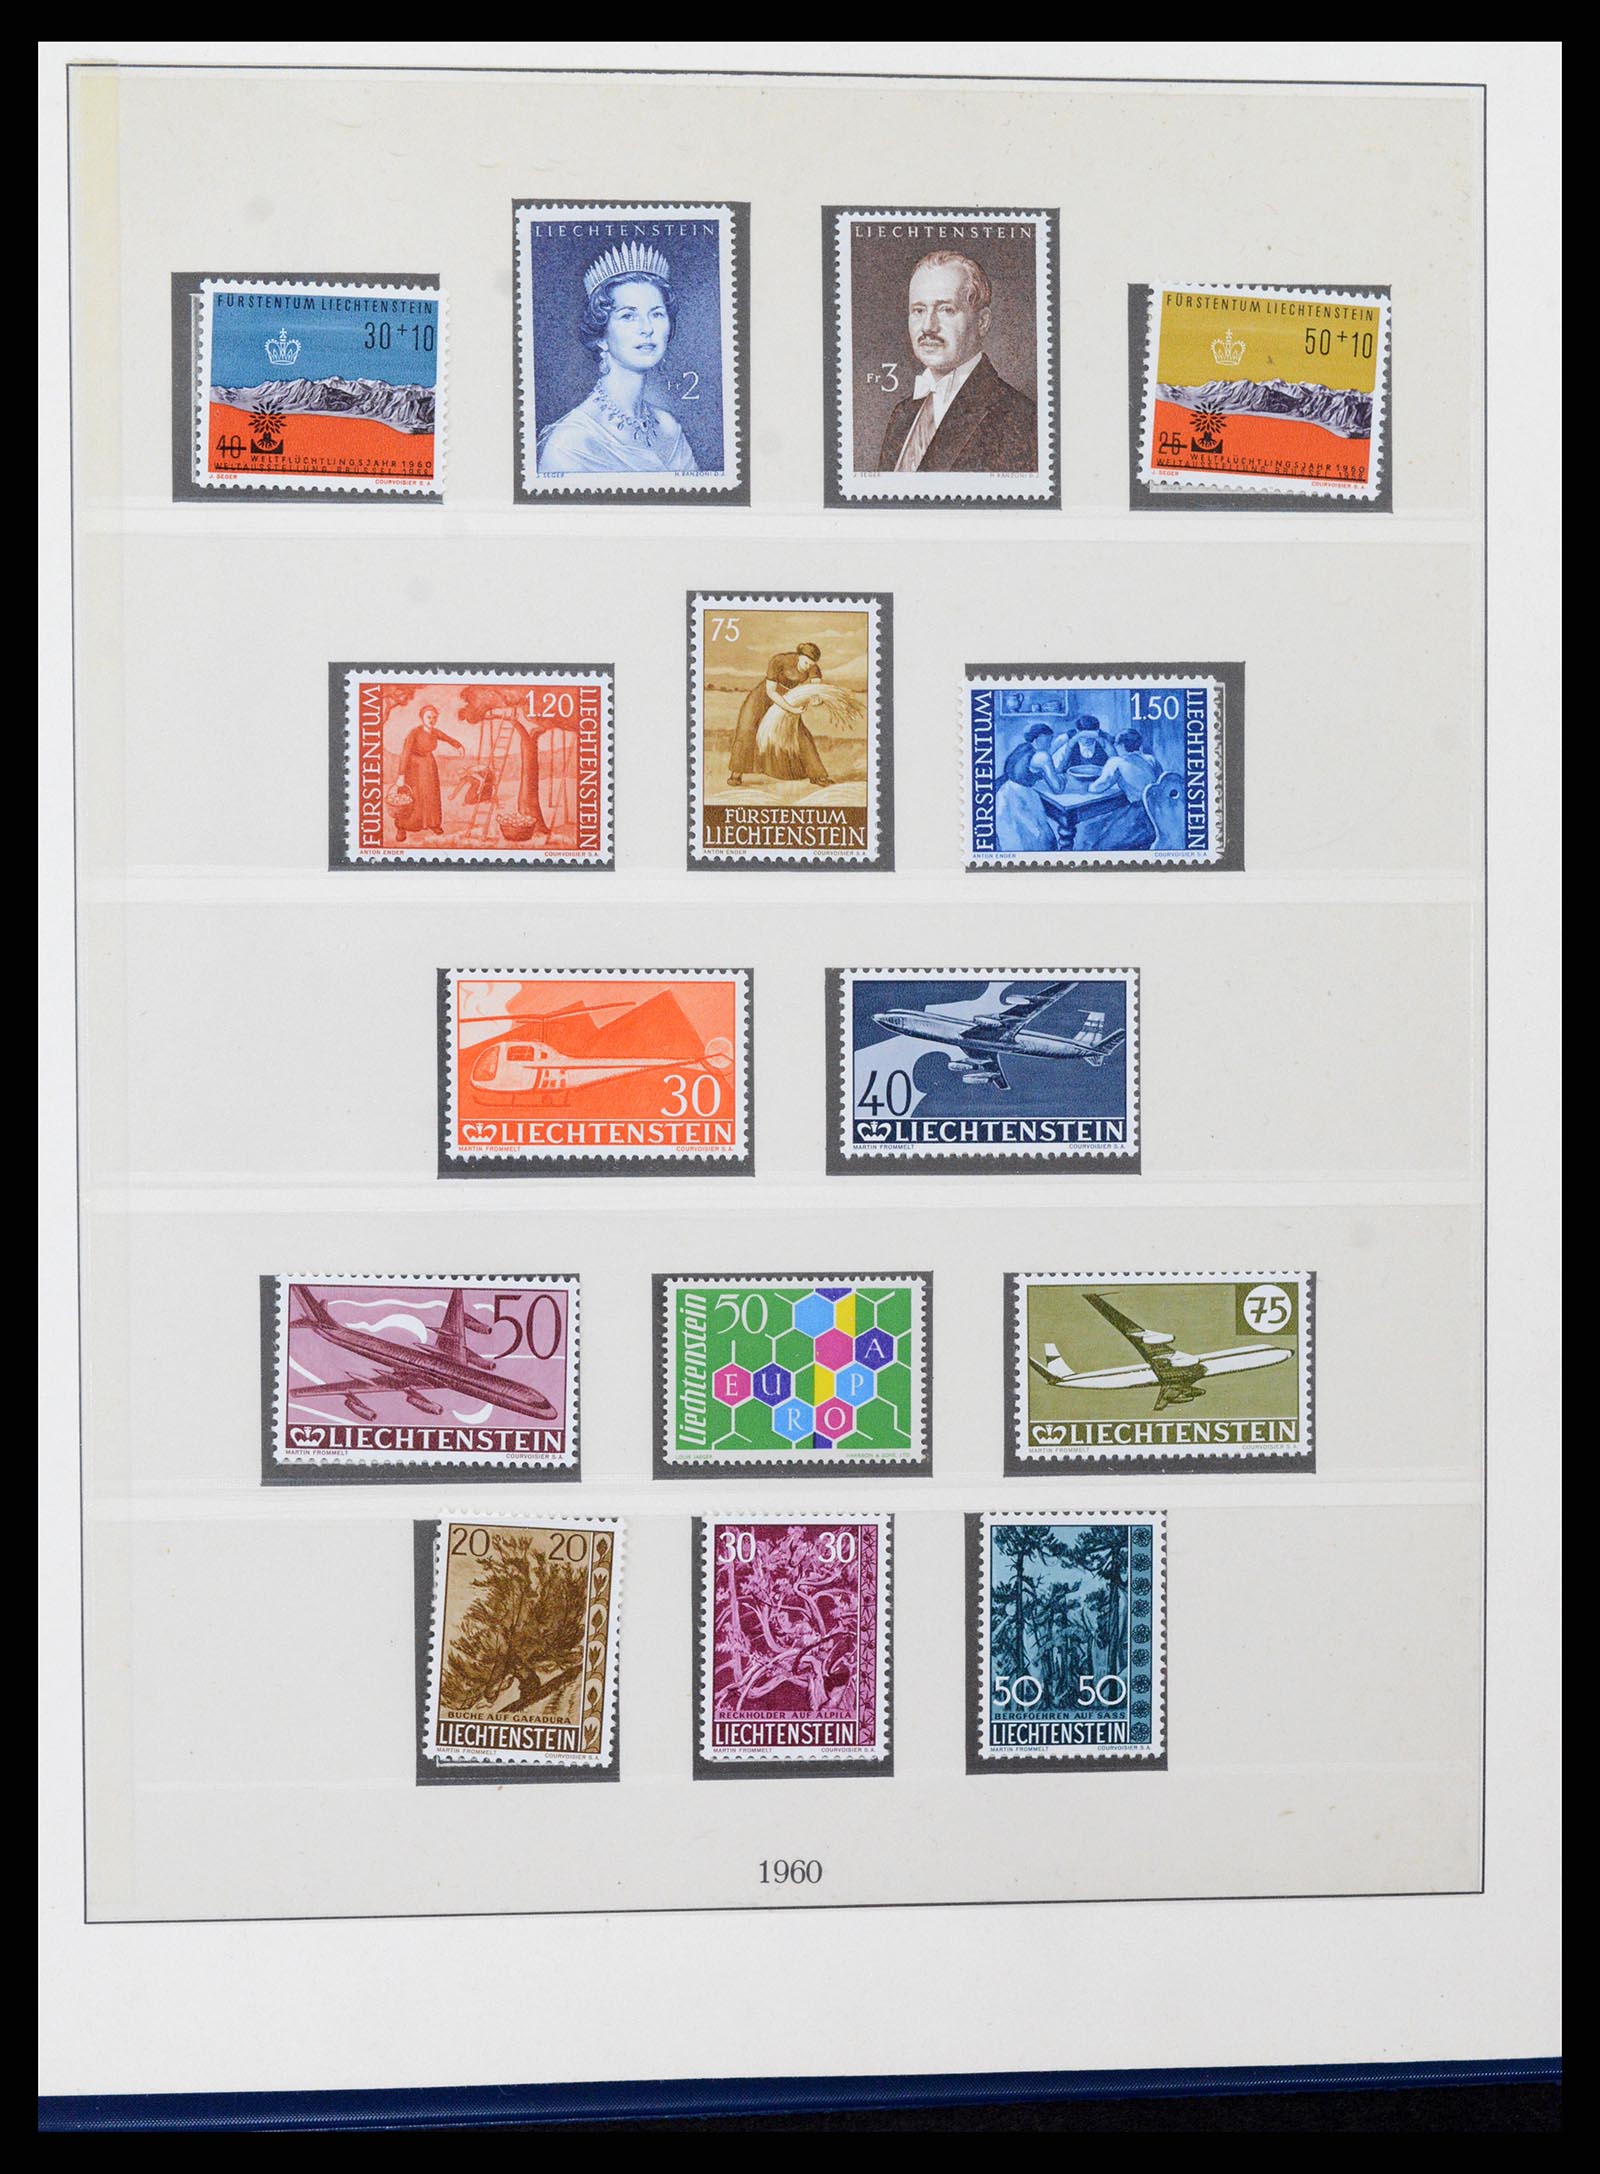 37295 036 - Stamp collection 37295 Liechtenstein 1912-2009.